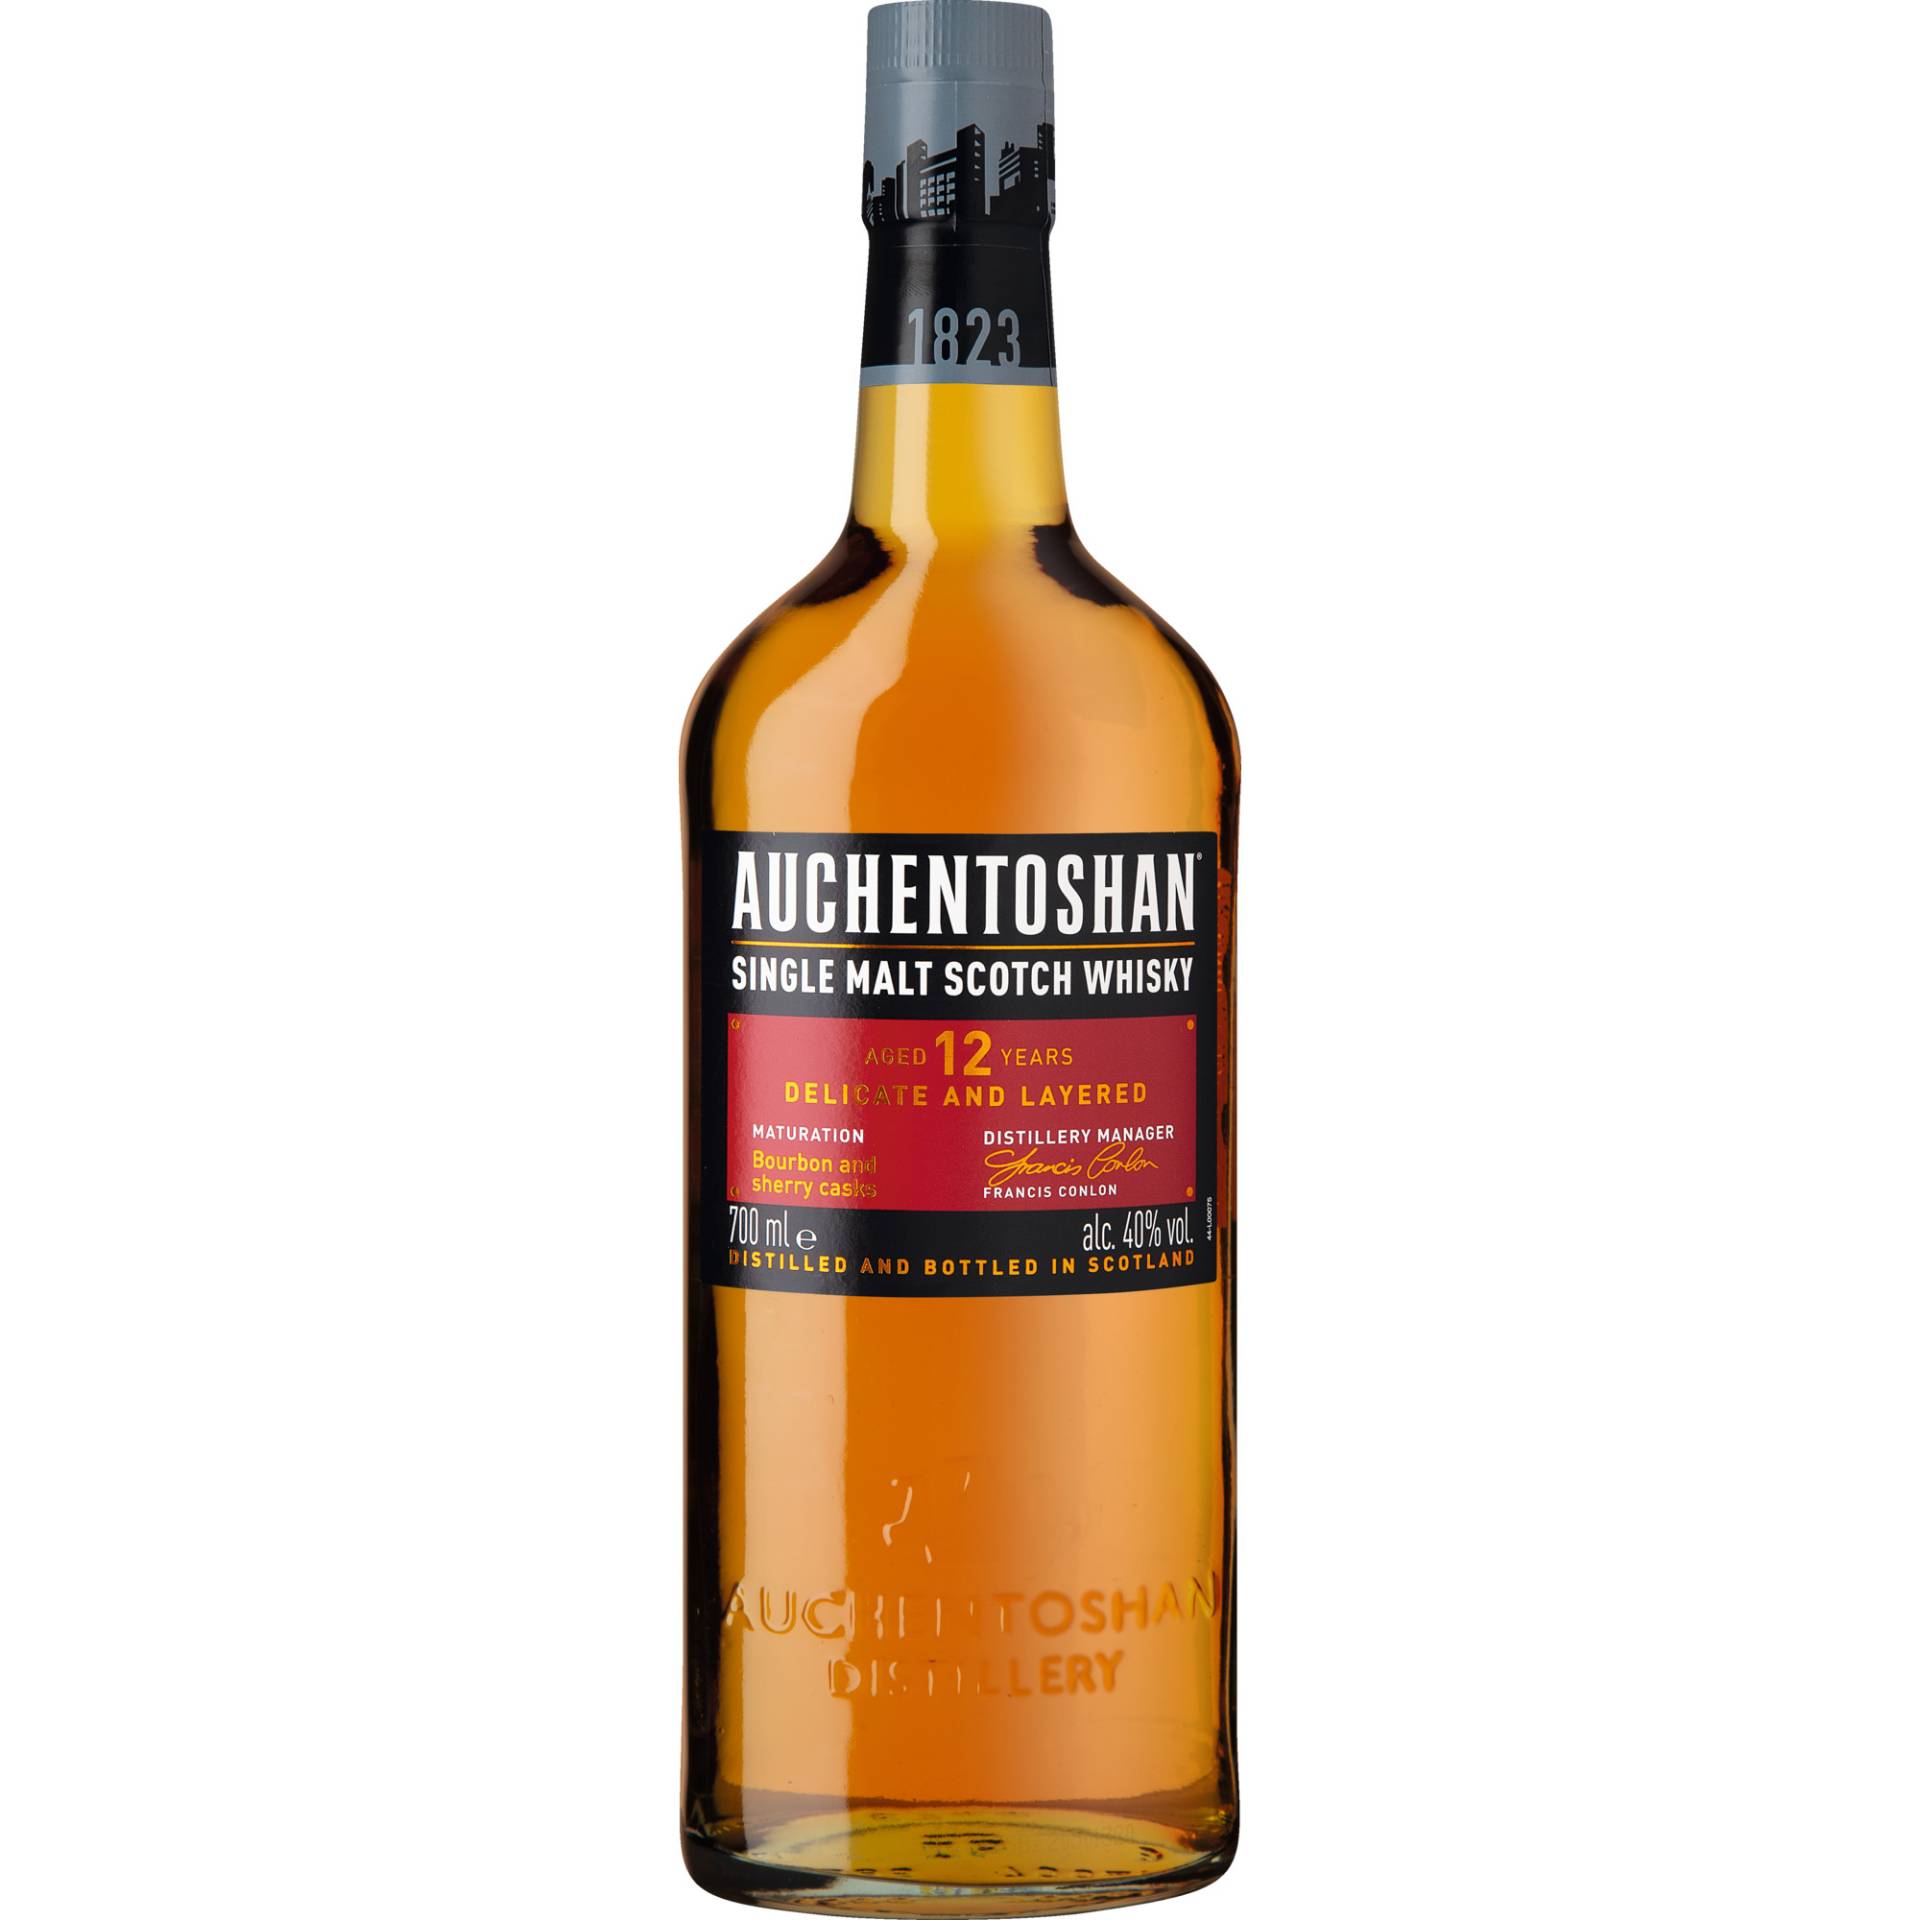 Auchentoshan 12 Years Single Malt Scotch Whisky, Triple distilled, 0,7 L, 40% Vol., Schottland, Spirituosen von Auchentoshan Distillery, Springburn Bond, Carlisle Street, Glasgow, G21 1EQ, UK